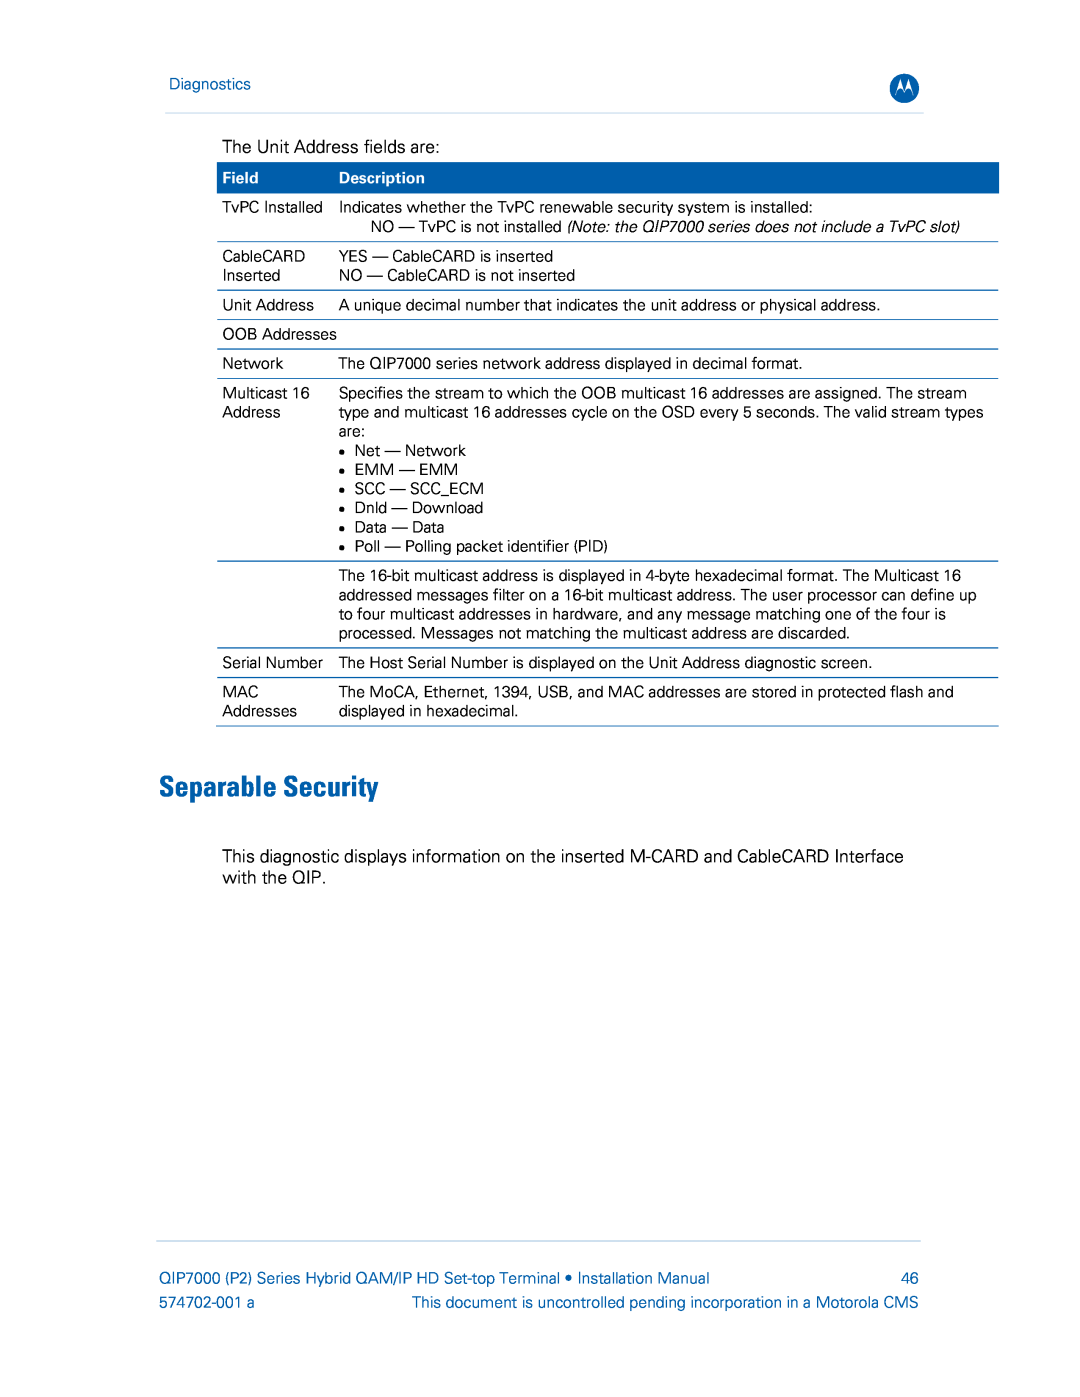 Motorola QIP7000 installation manual Separable Security, Diagnostics, Field, Description, 574702-001 a 